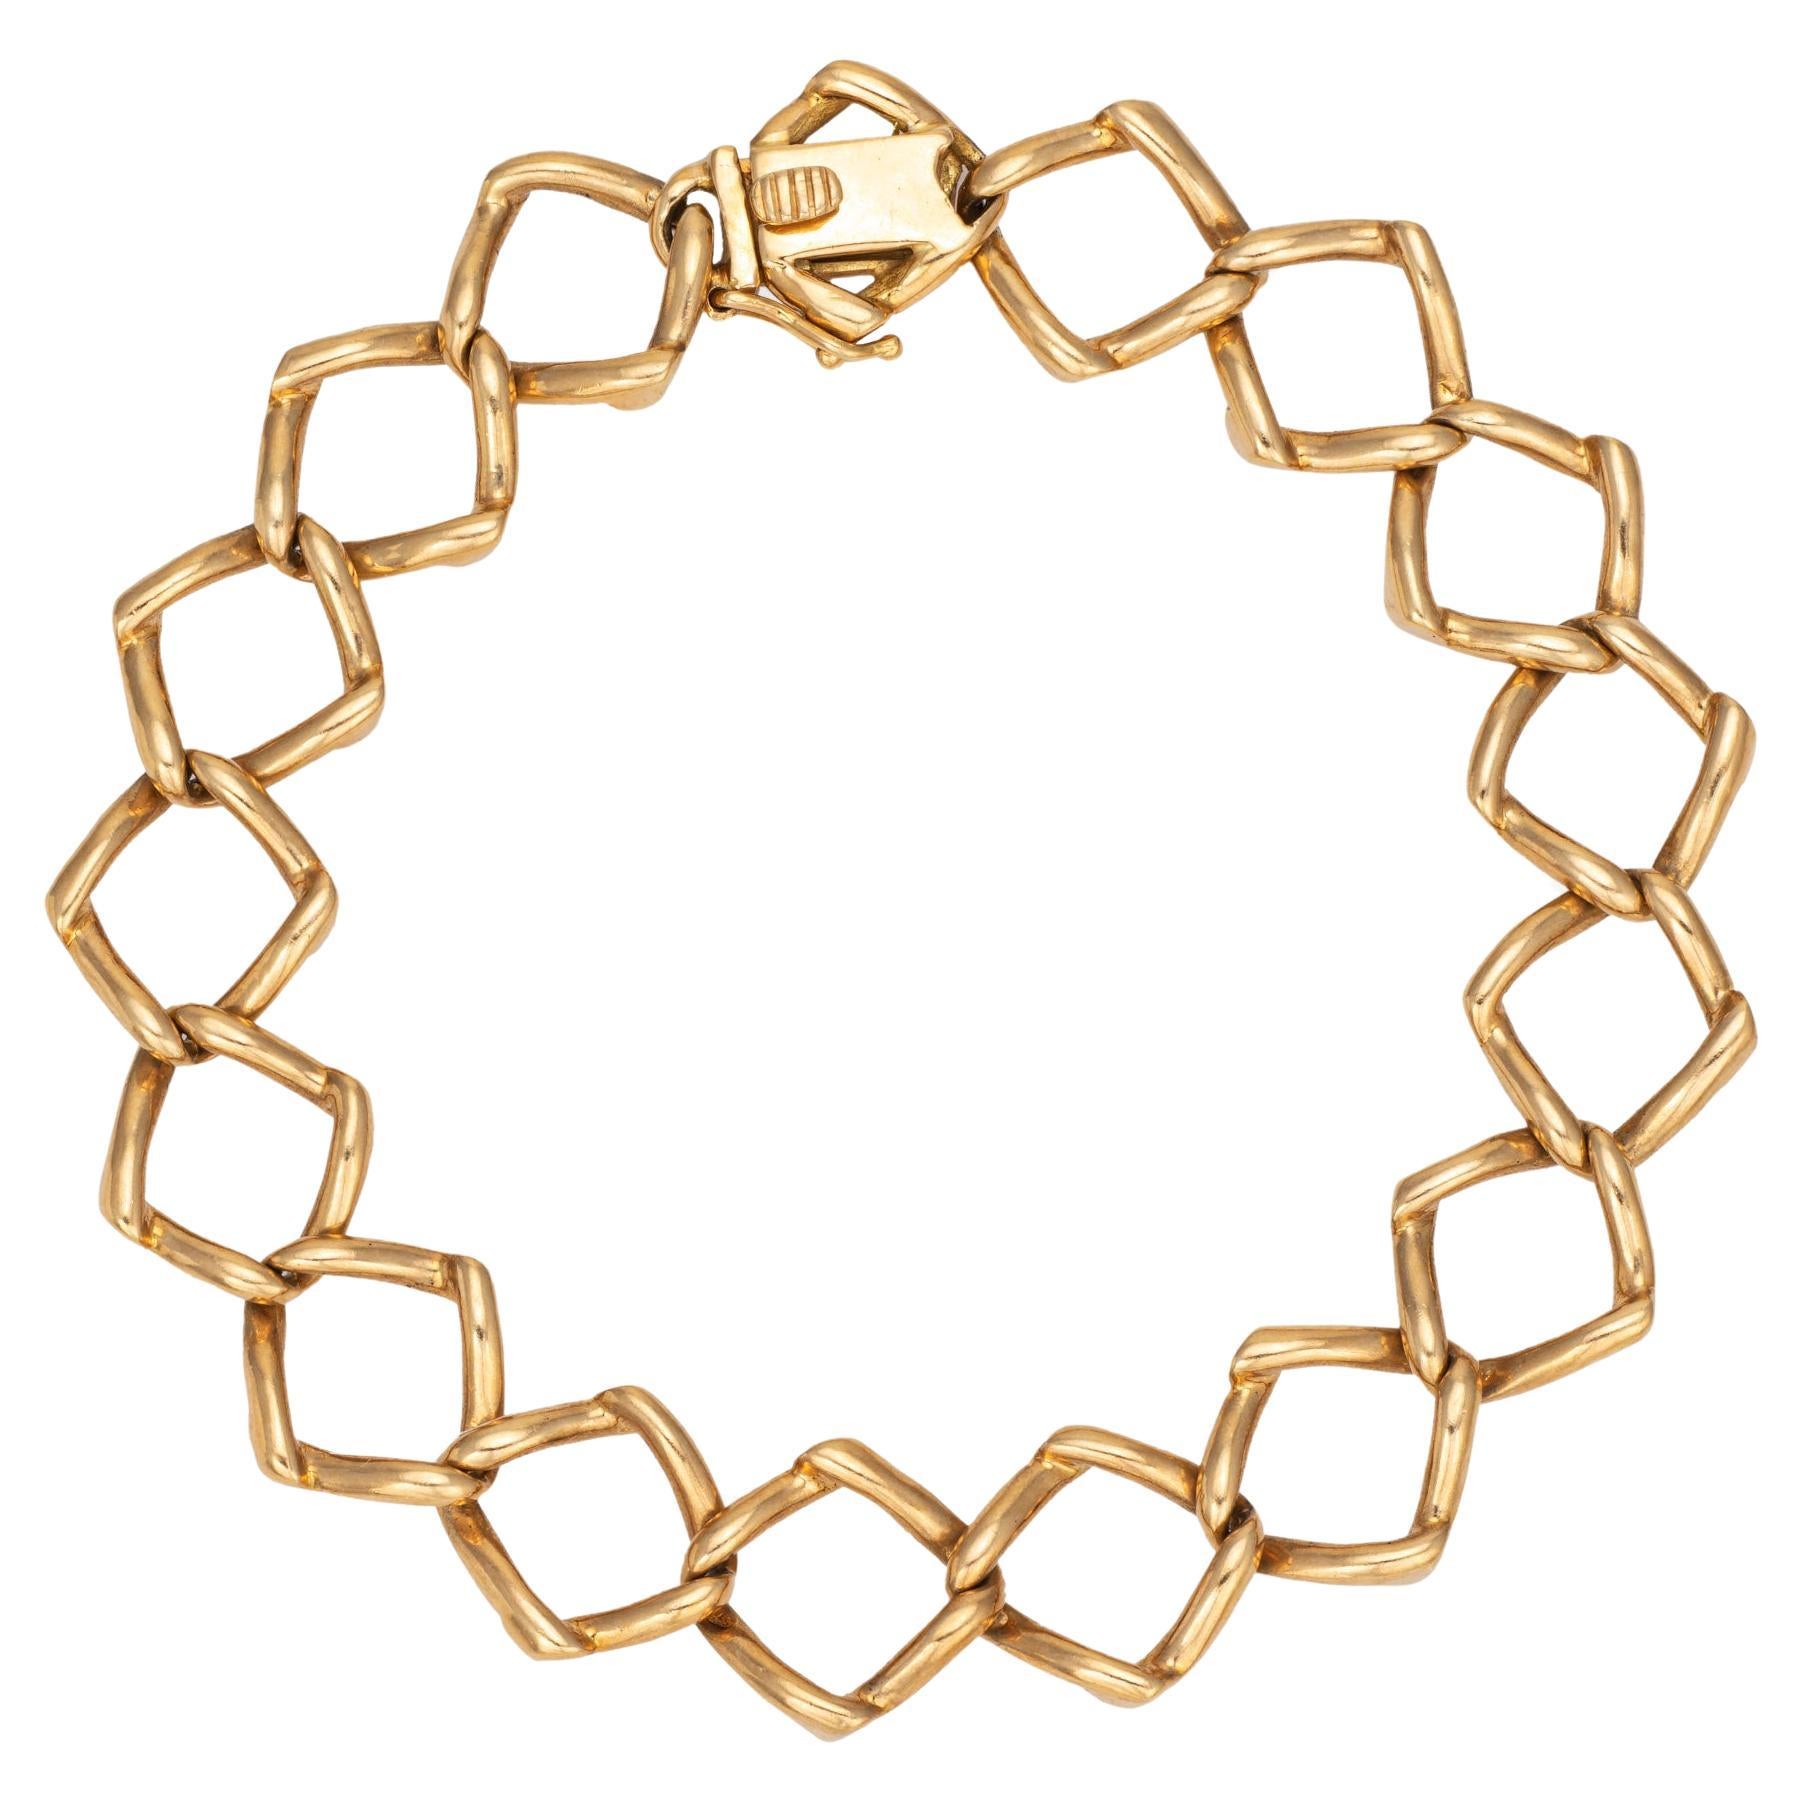 1981 Tiffany & Co Bracelet Paloma Picasso Vintage Triangle Link 18k Gold 7" 